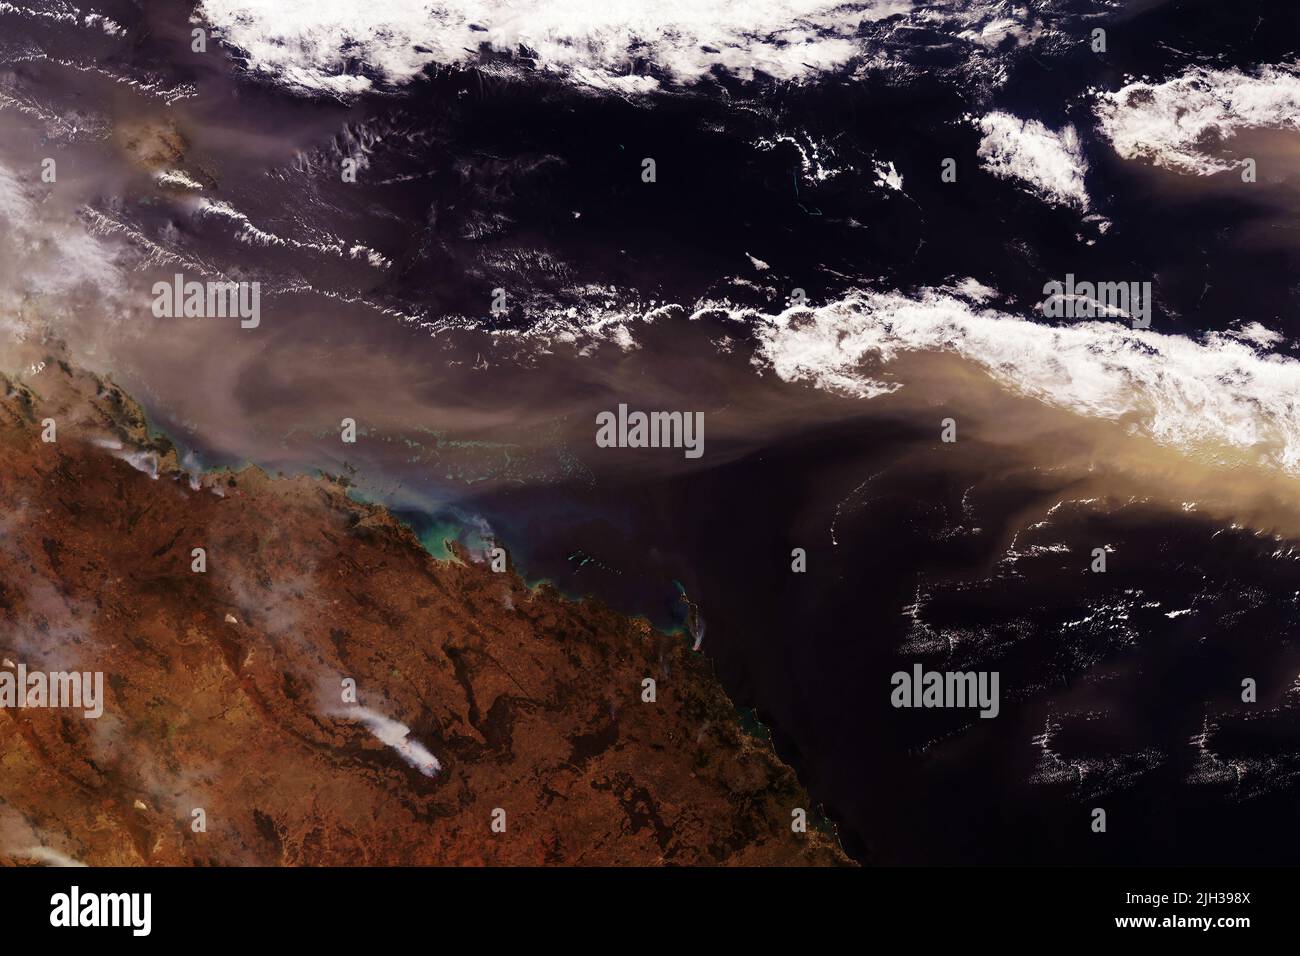 Sandsturm aus dem All. Elemente dieses Bildes, die von der NASA eingerichtet wurden. Hochwertige Fotos Stockfoto